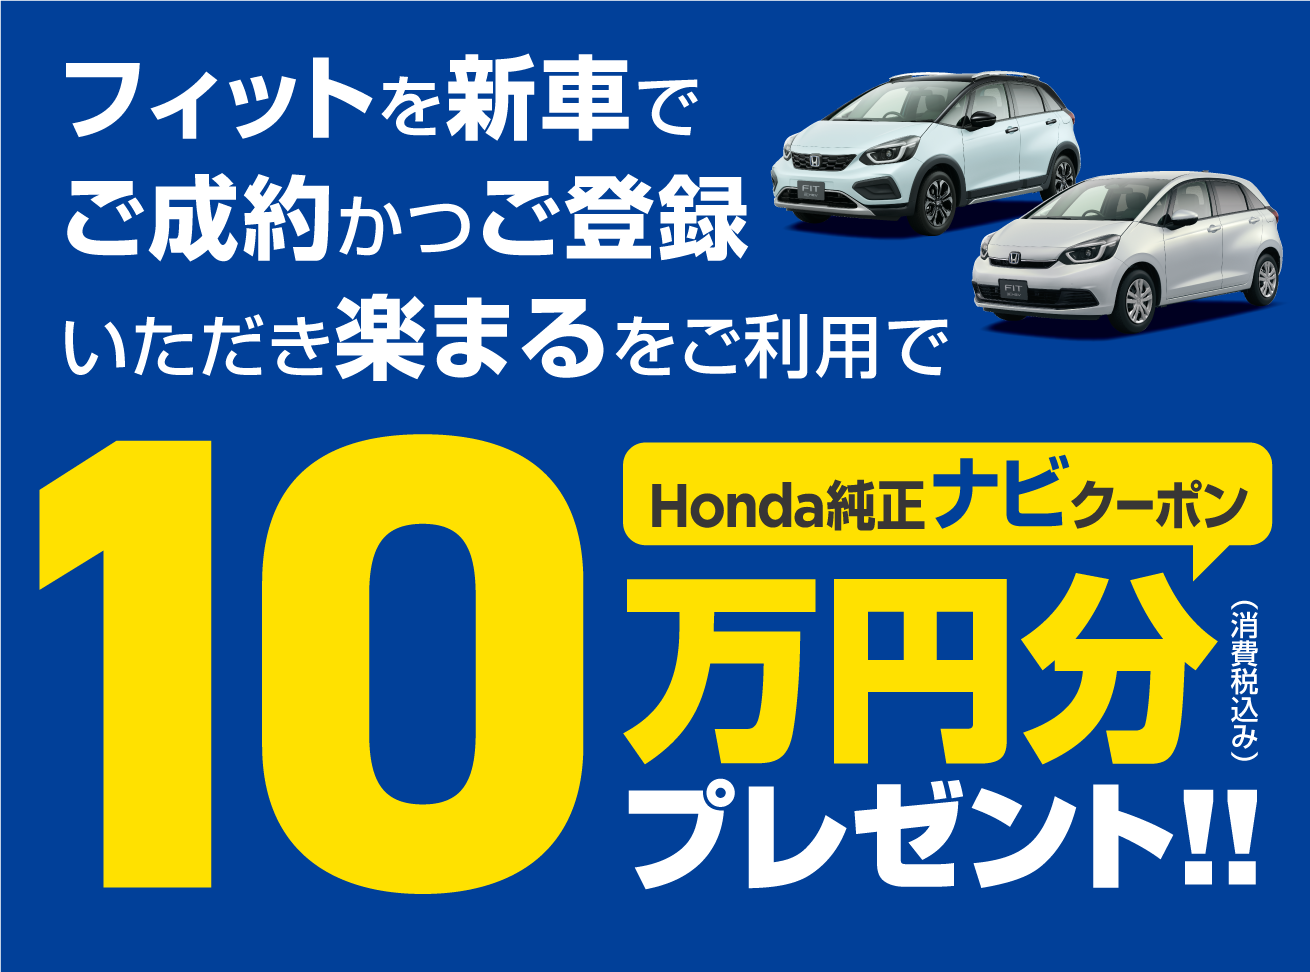 フィット Honda純正ナビ購入クーポン 10万円分キャンペーン